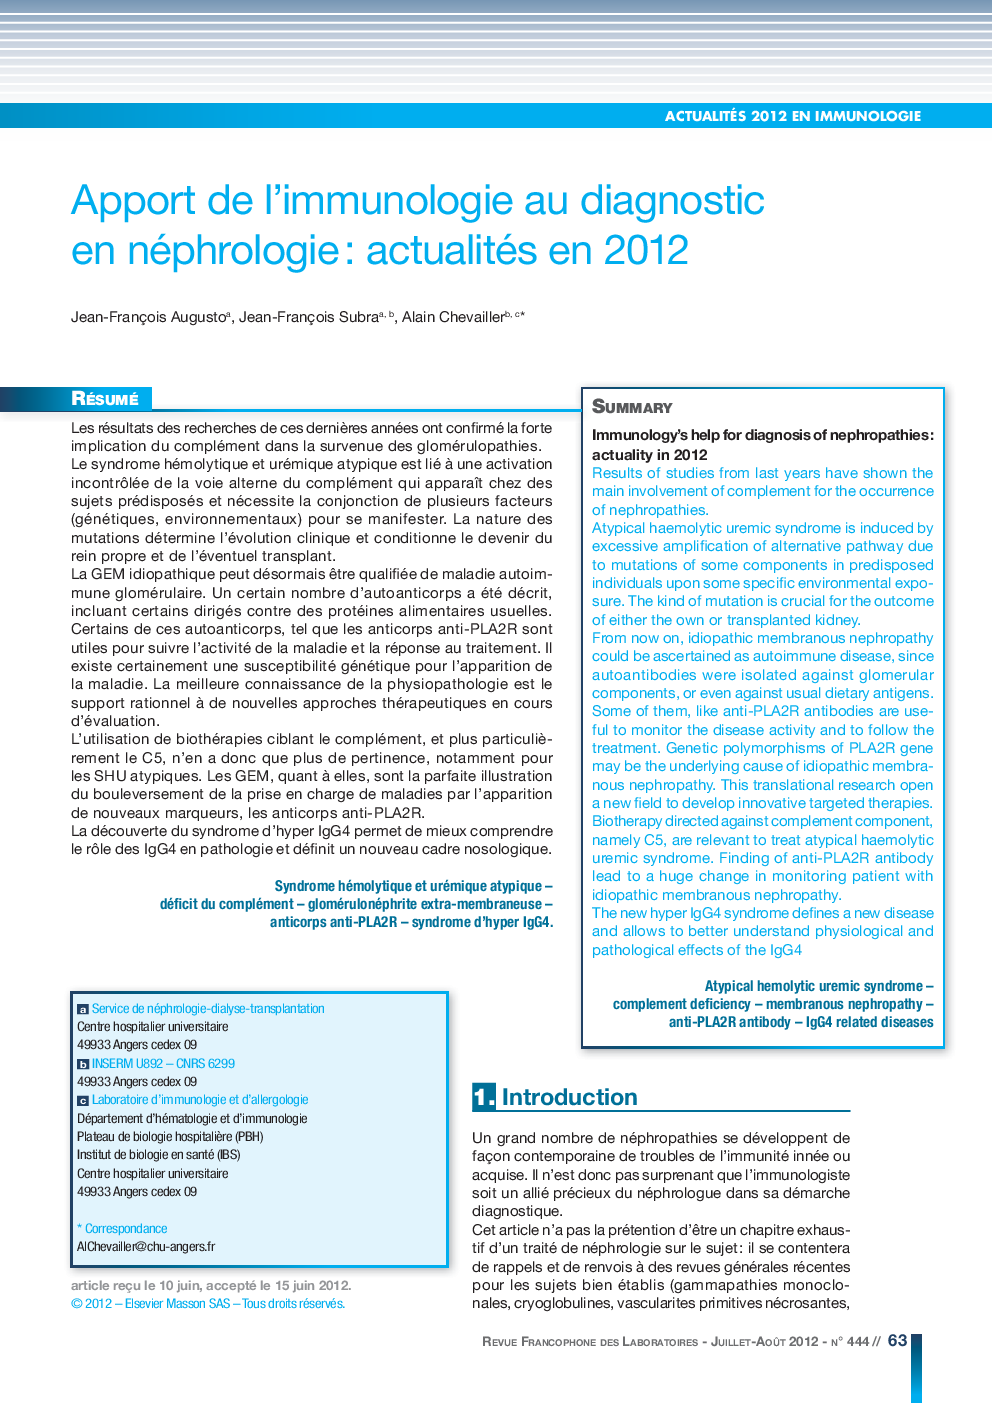 Apport de l'immunologie au diagnostic en néphrologie : actualités en 2012